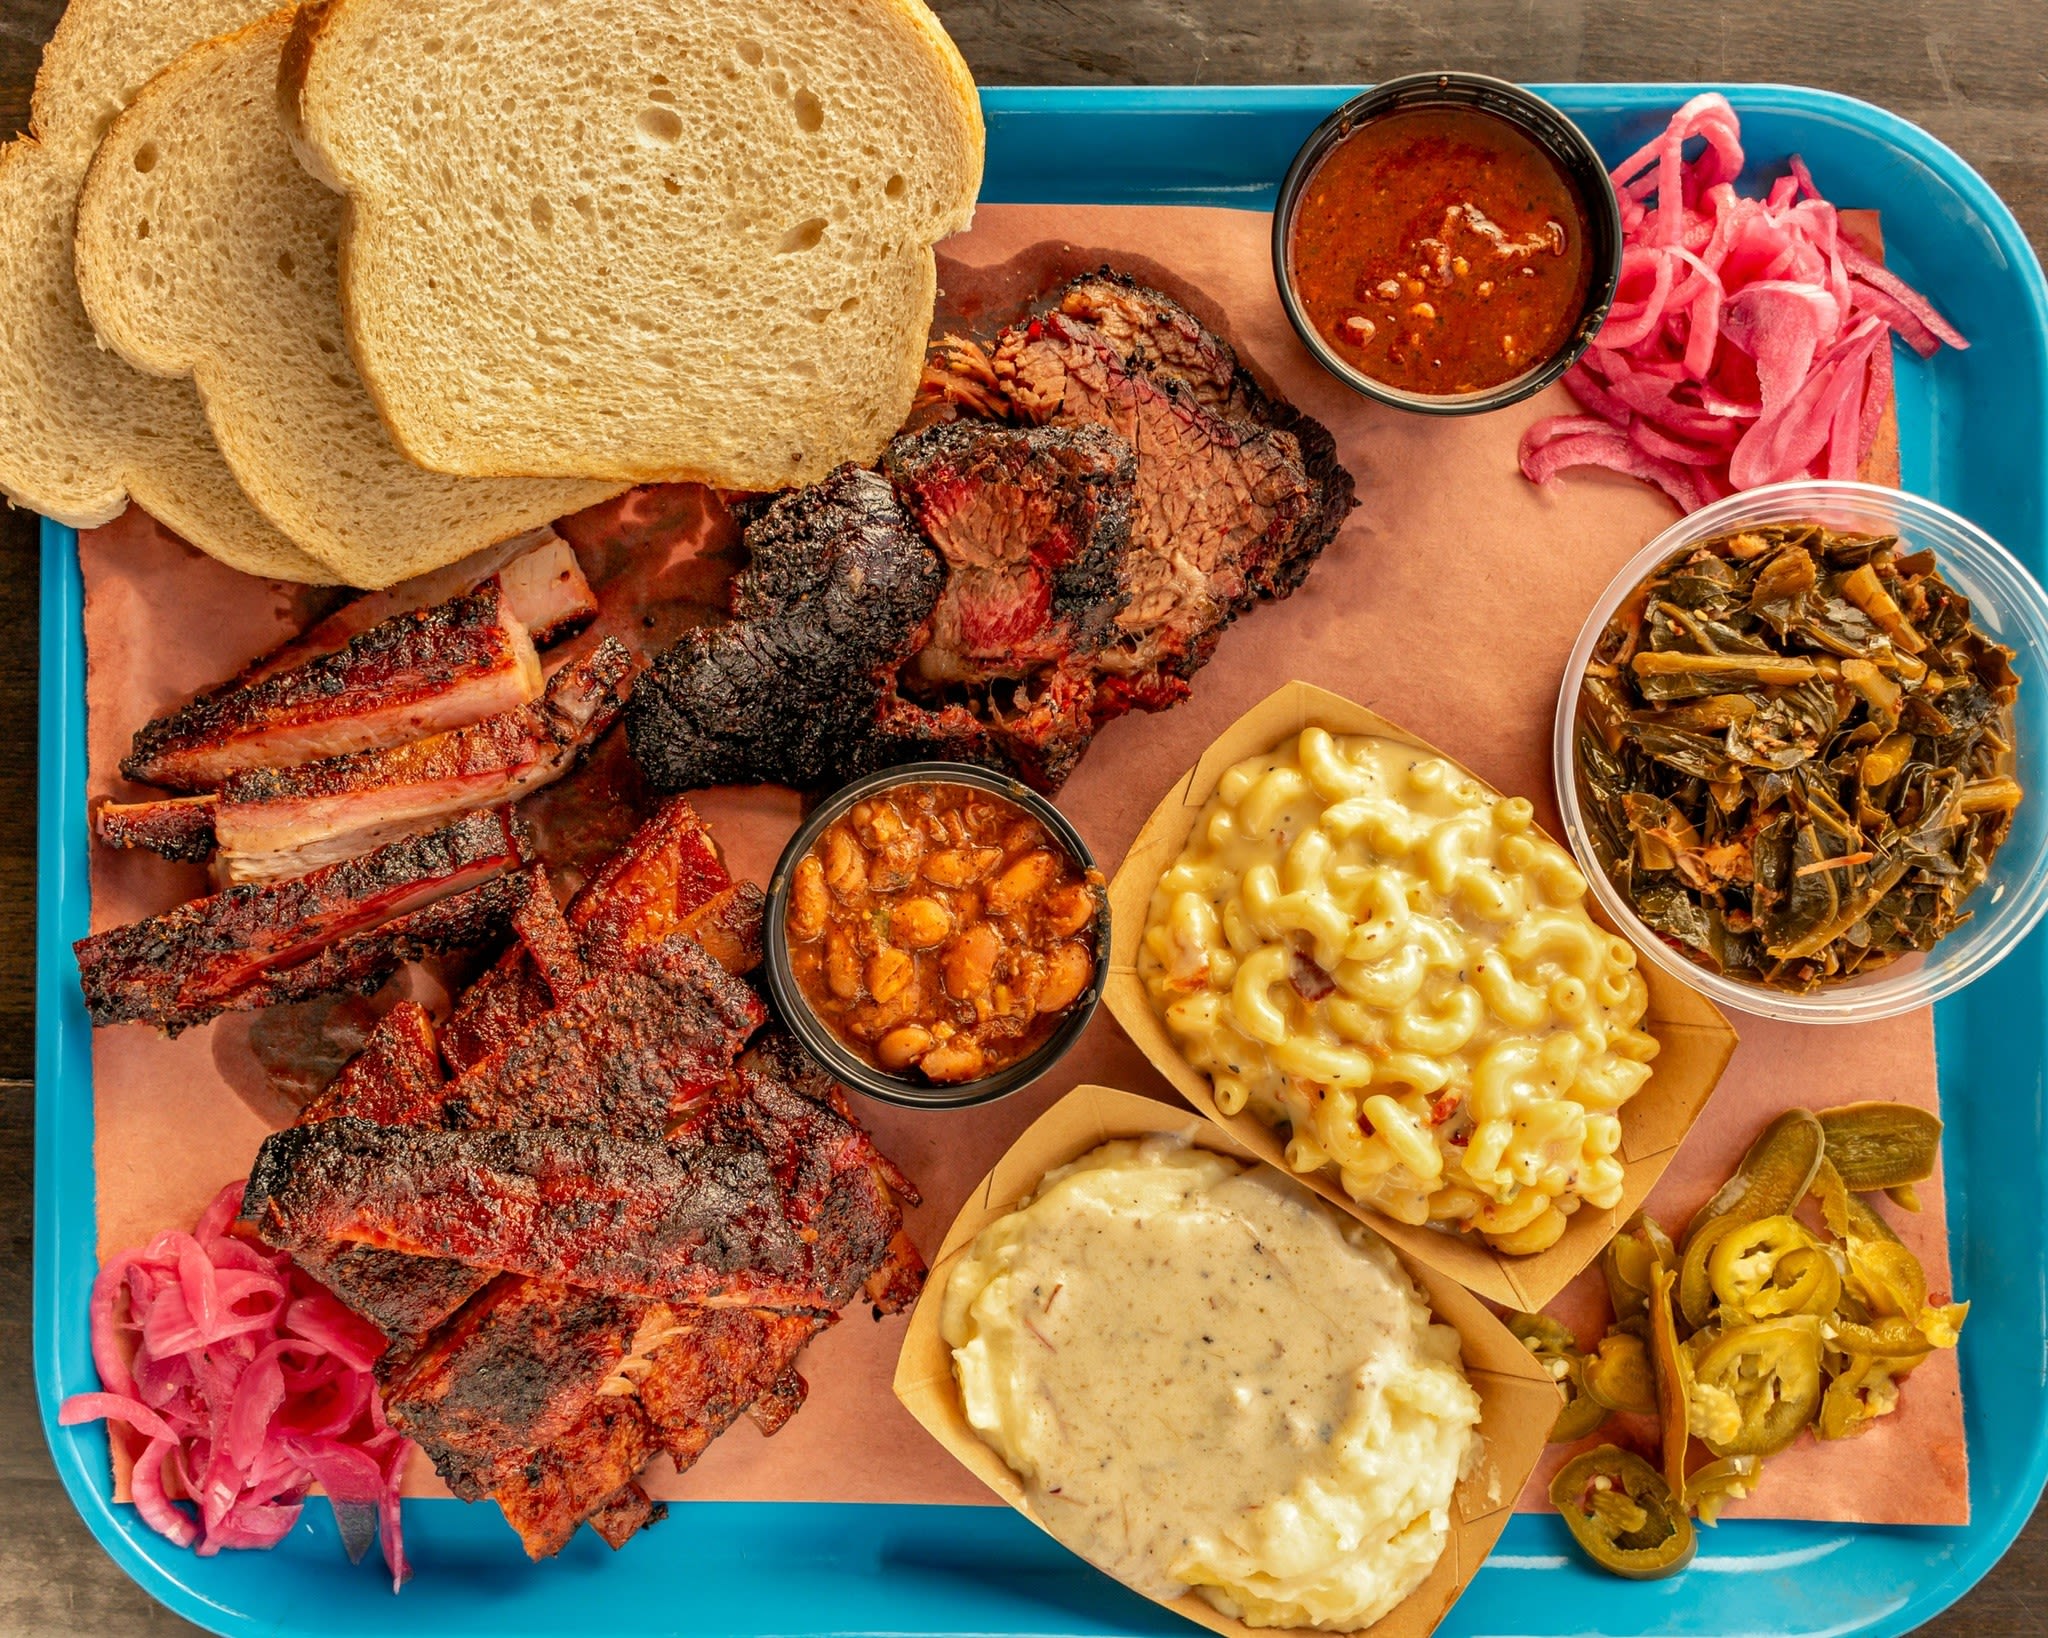 Colorado smokehouse shows how to do Texas barbecue right